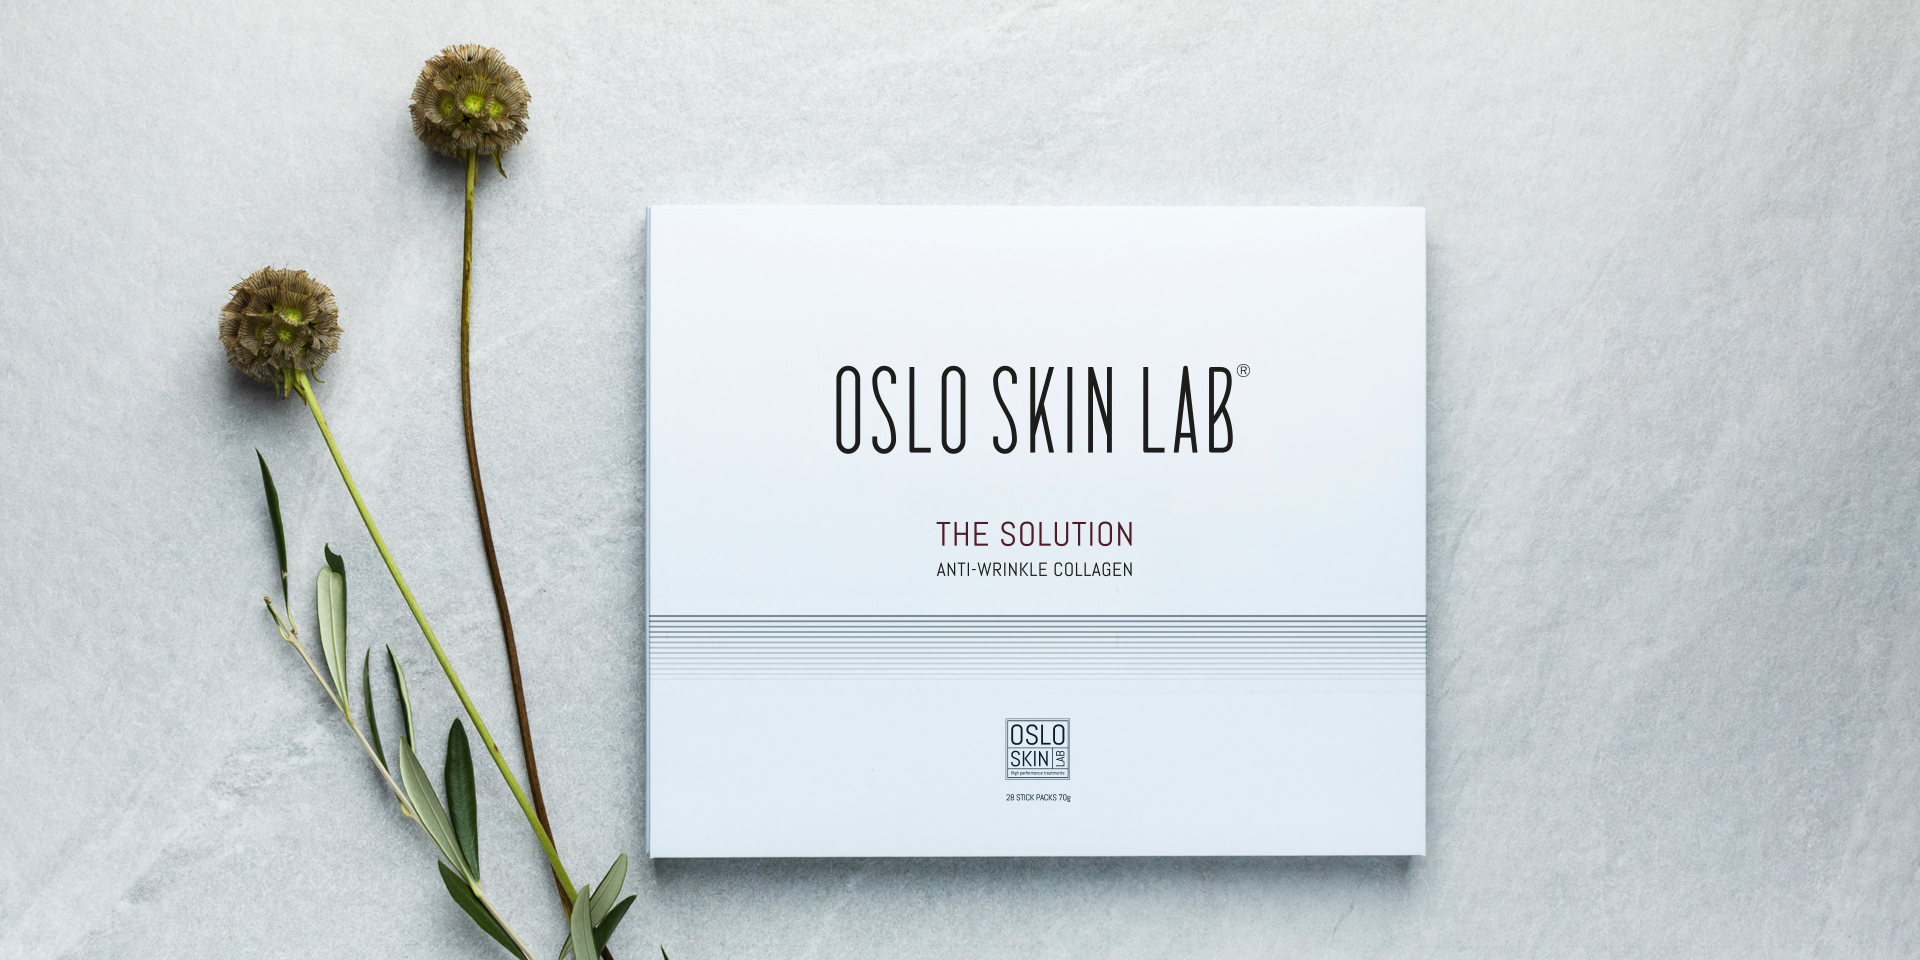 oslo skin lab